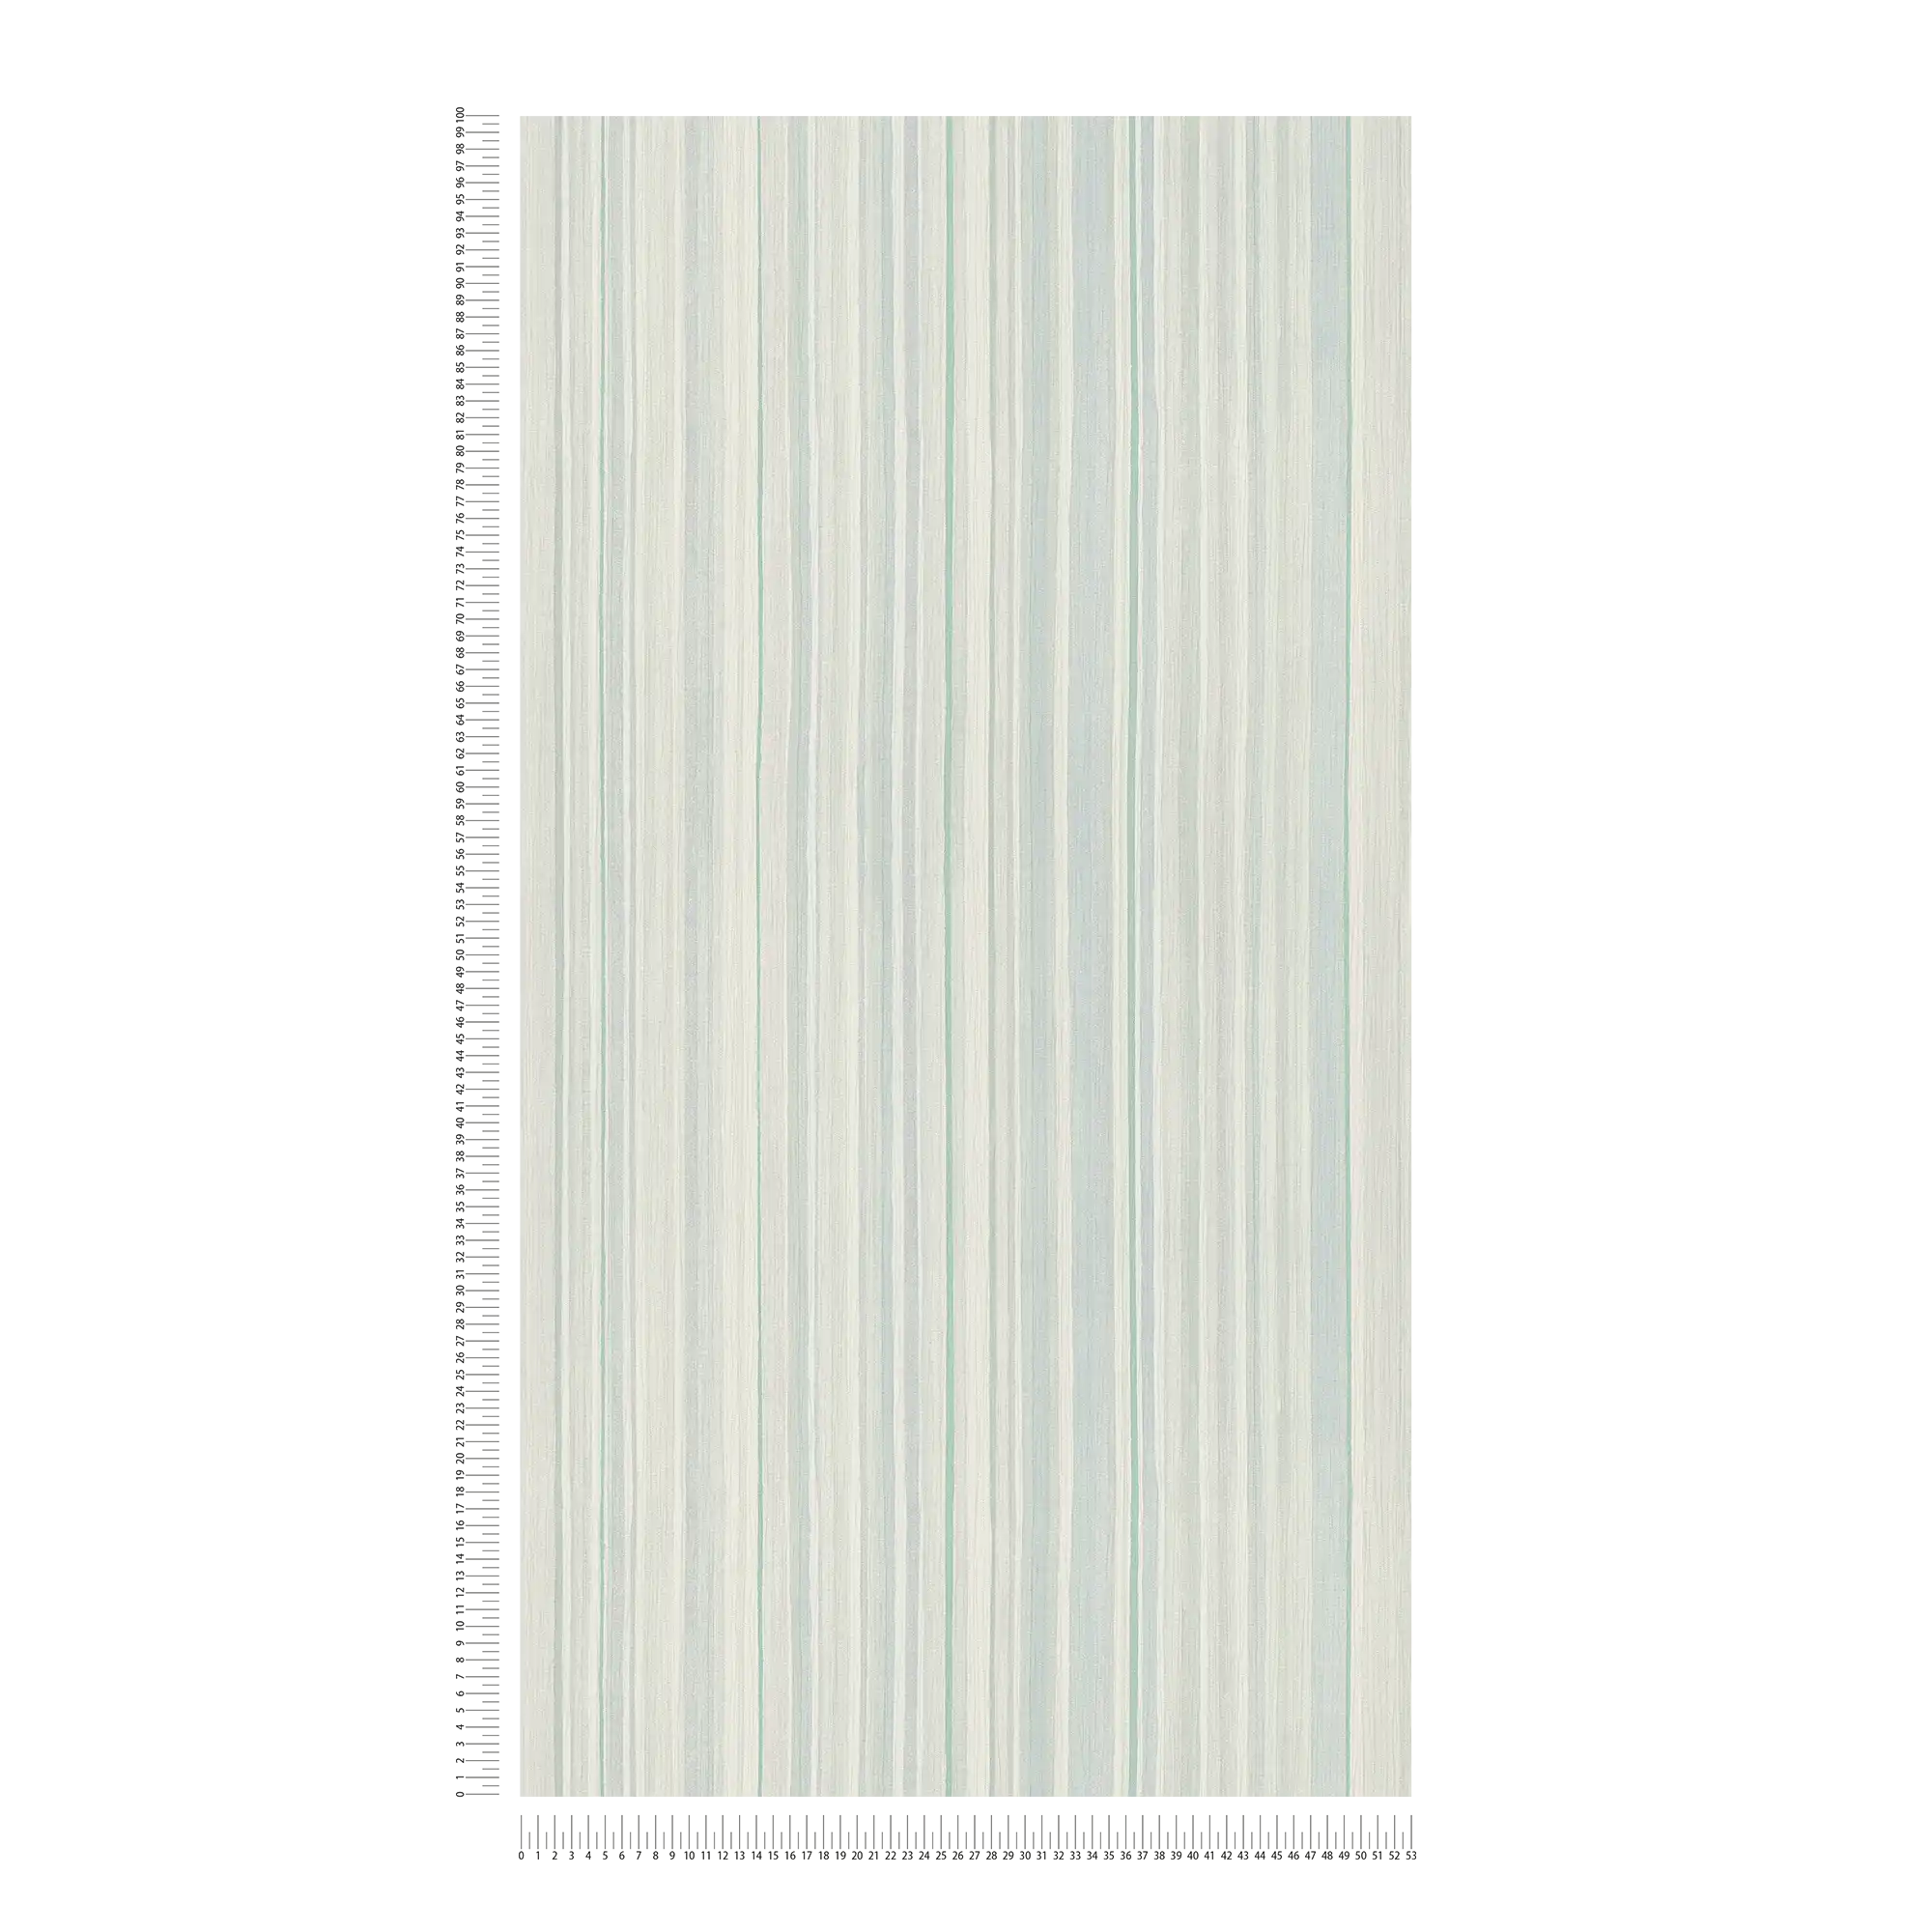             Papier peint rayé avec motif de lignes - bleu, vert, gris
        